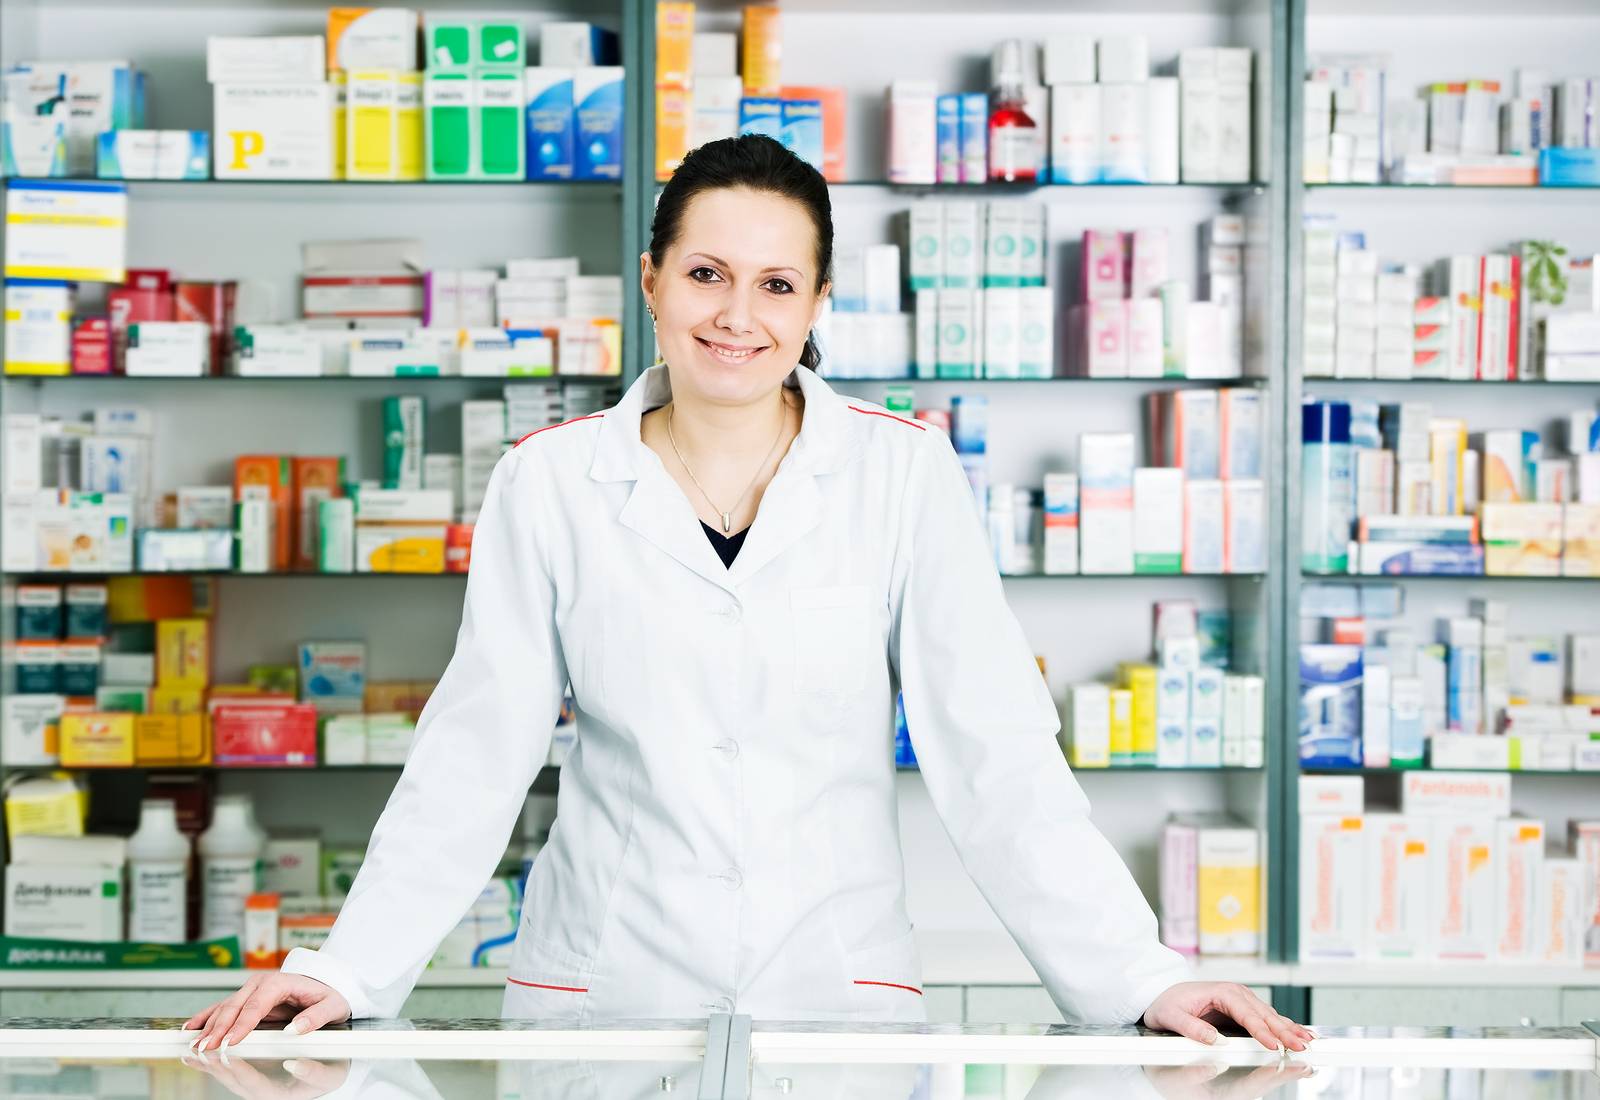 Покупка лекарств в аптеках испании в 2021 году: цены, график работы